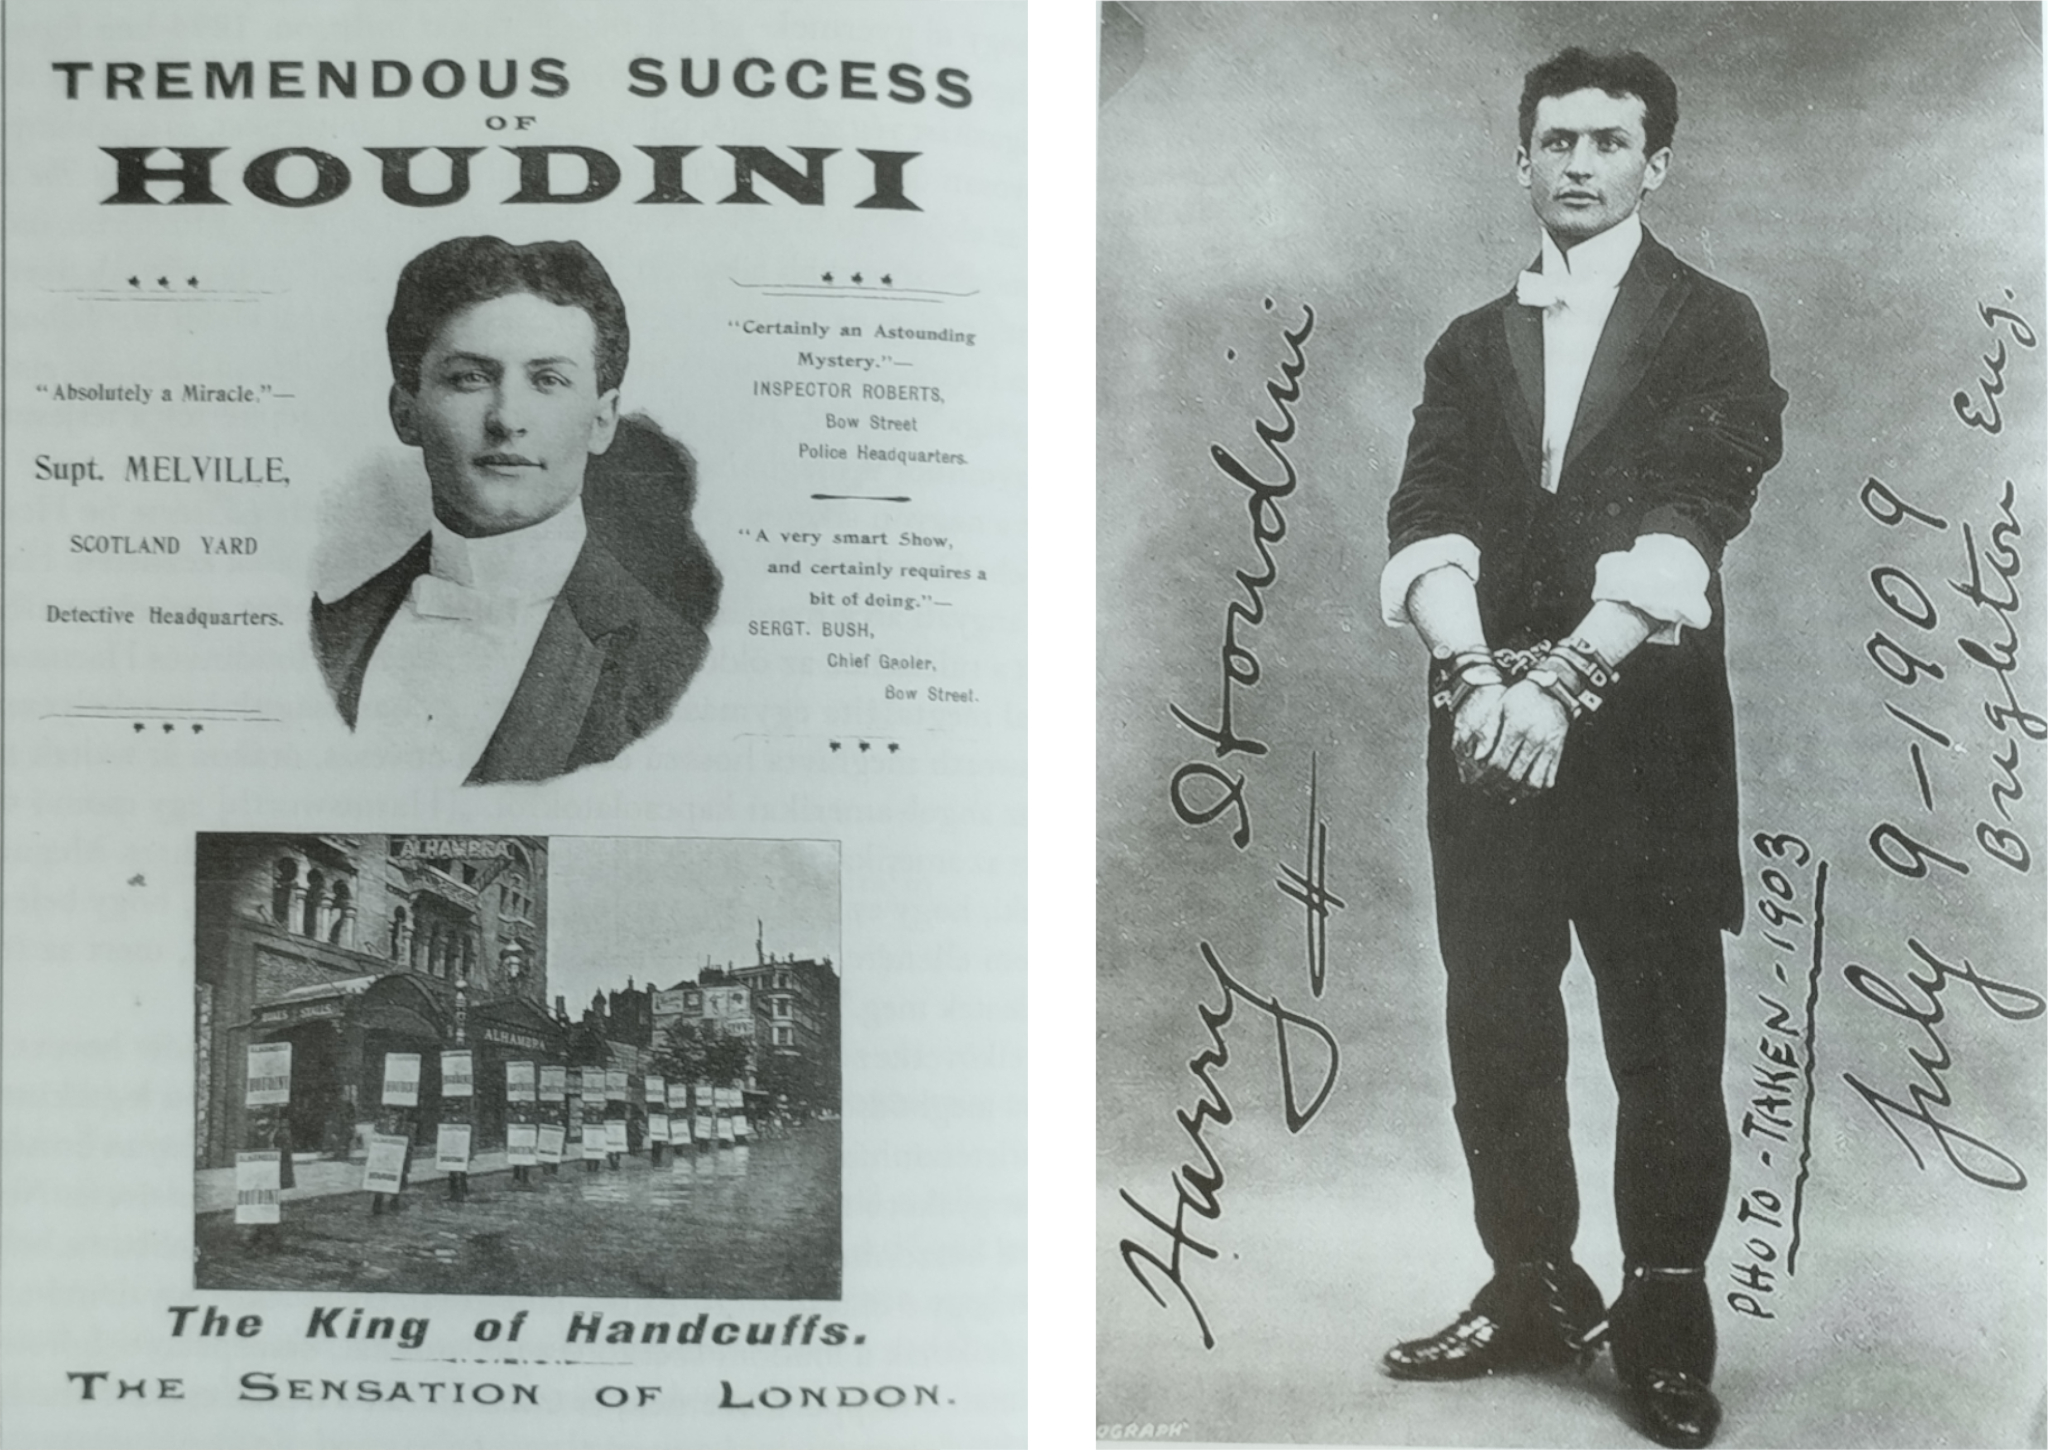 Houdinit népszerűsítő plakát Melville főfelügyelő (Scotland Yard) méltató szavaival, valamint egy dedikált képeslap 1902-ből. Forrás: Kalusch & Sloman, 2019.